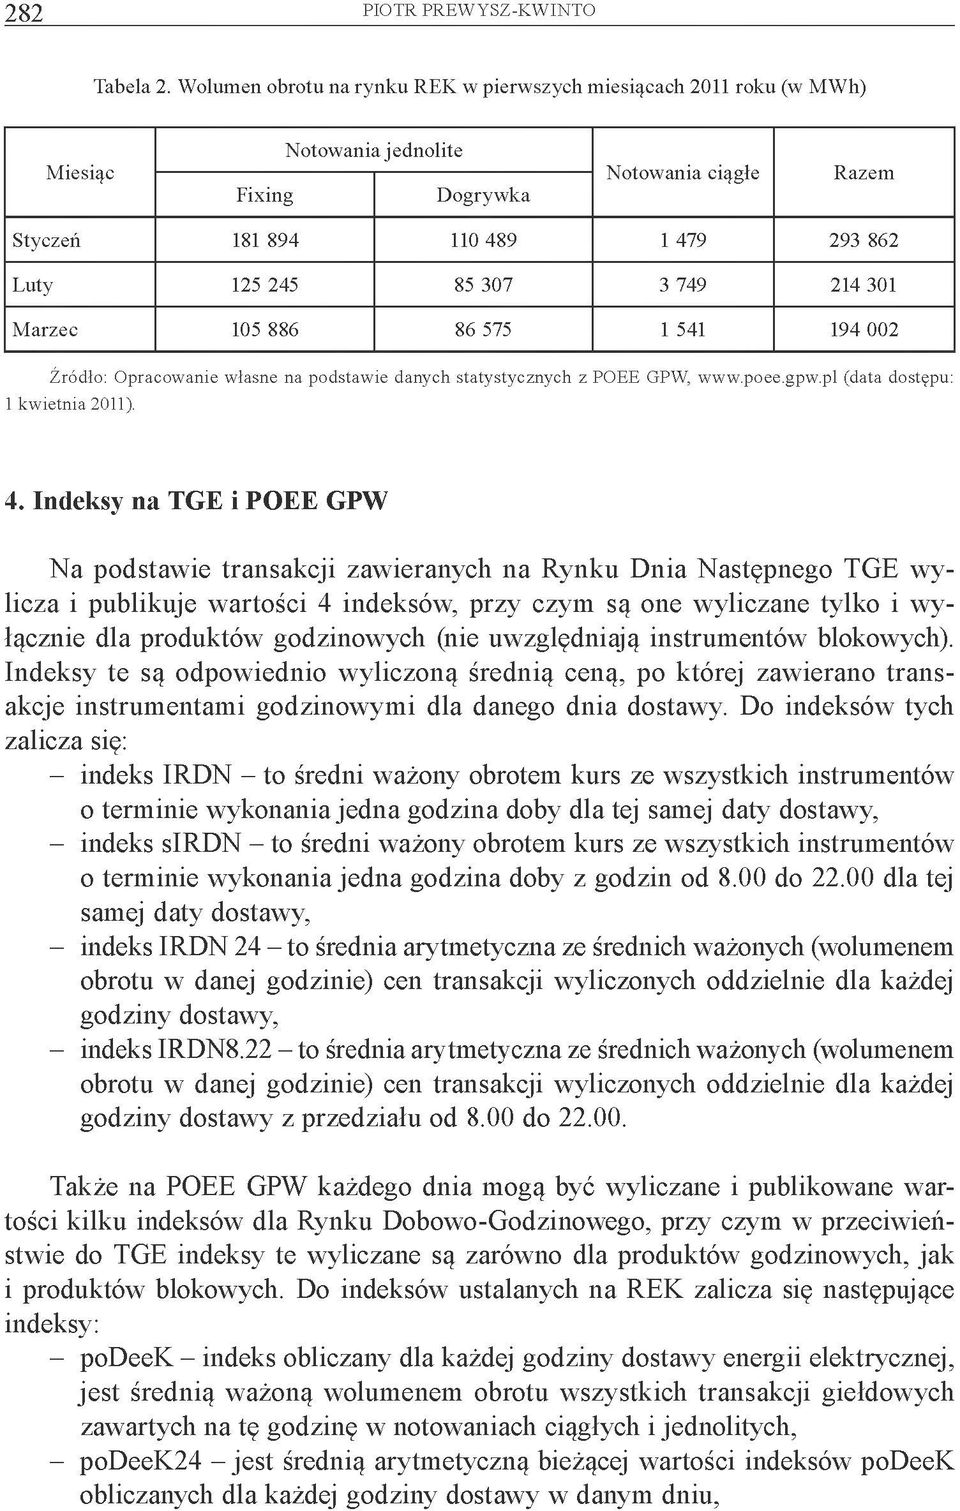 749 214 301 Marzec 105 886 86 575 1 541 194 002 Źródło: Opracowanie własne na podstawie danych statystycznych z POEE GPW, www.poee.gpw.pl (data dostępu: 1 kwietnia 2011). 4.